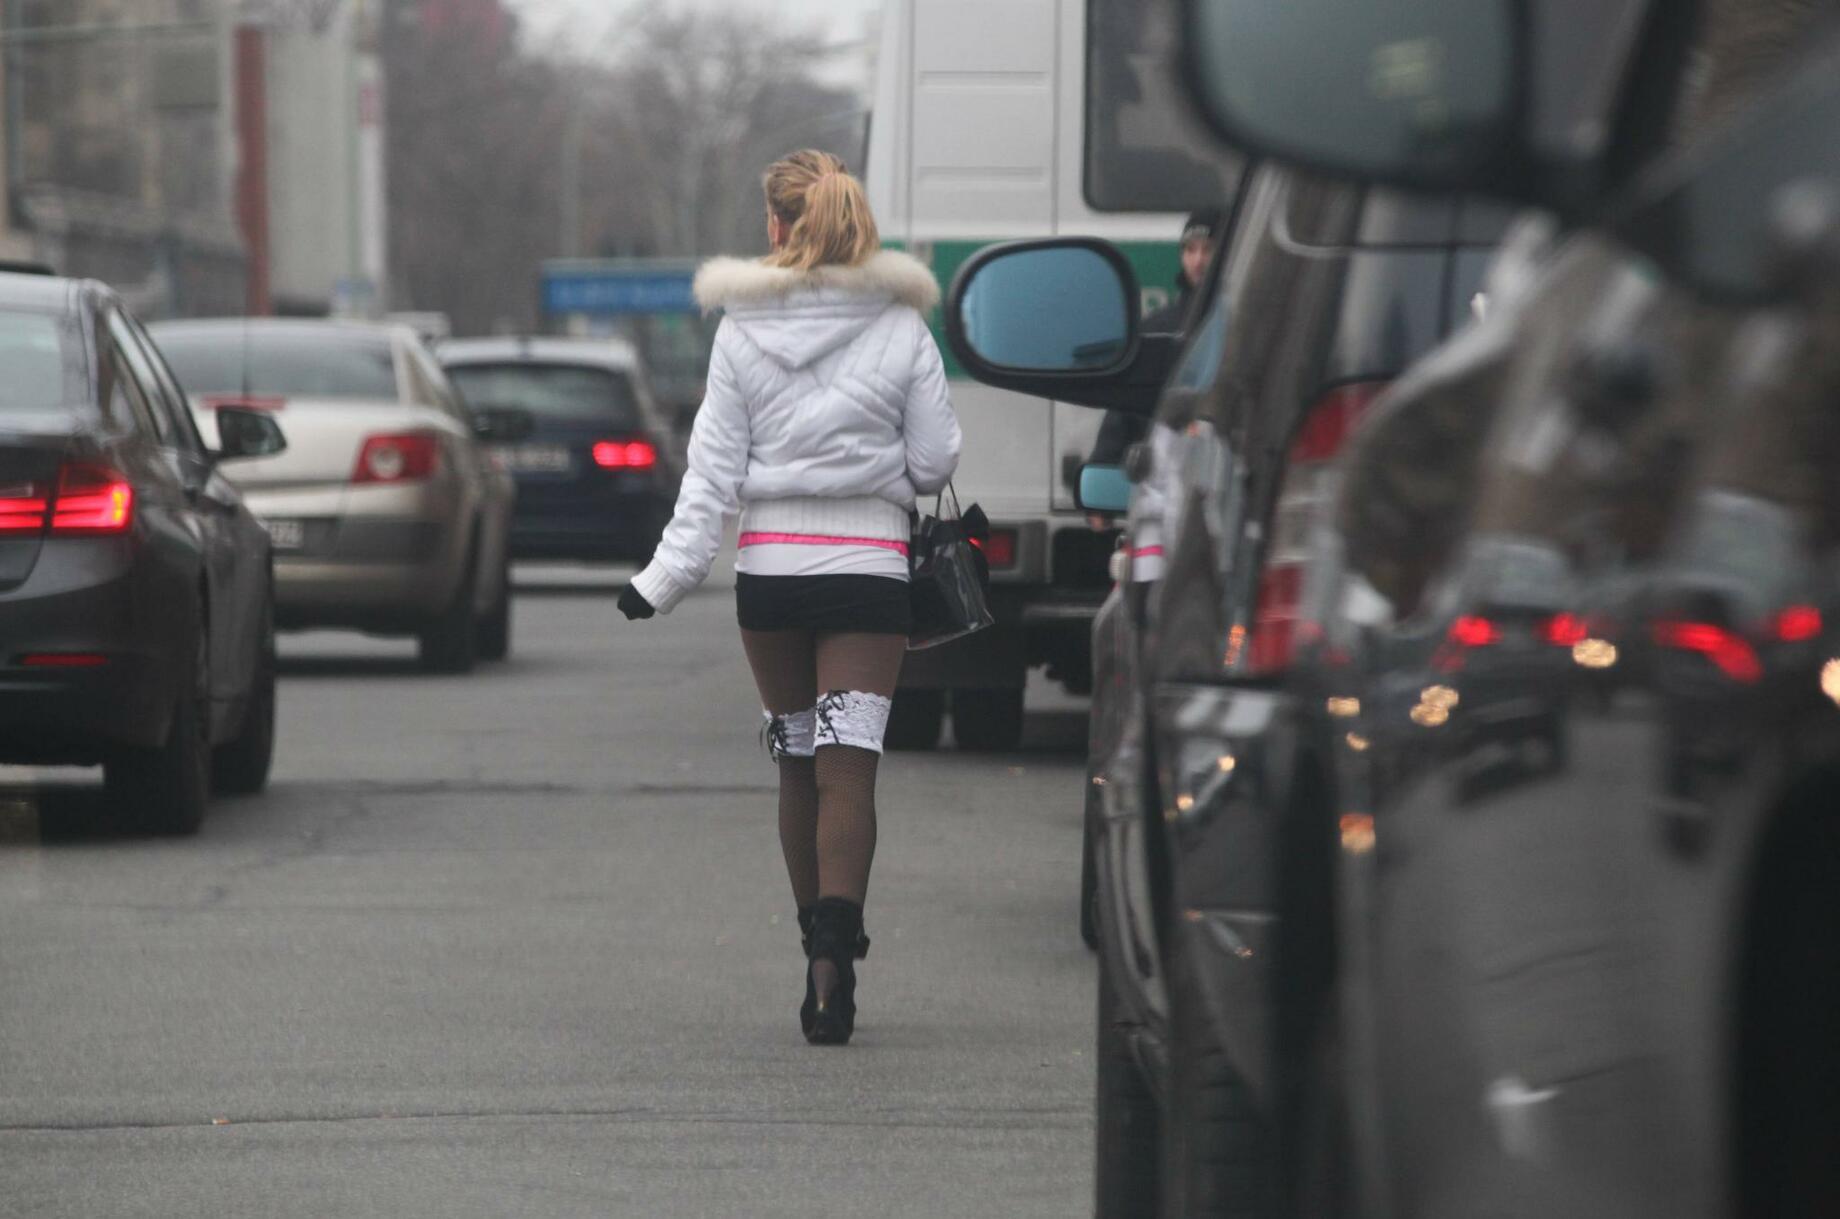 Путаны на дороге. Девушка на трассе. Уличные точки. Уличная проституция в Москве. Плечевые на трассе.